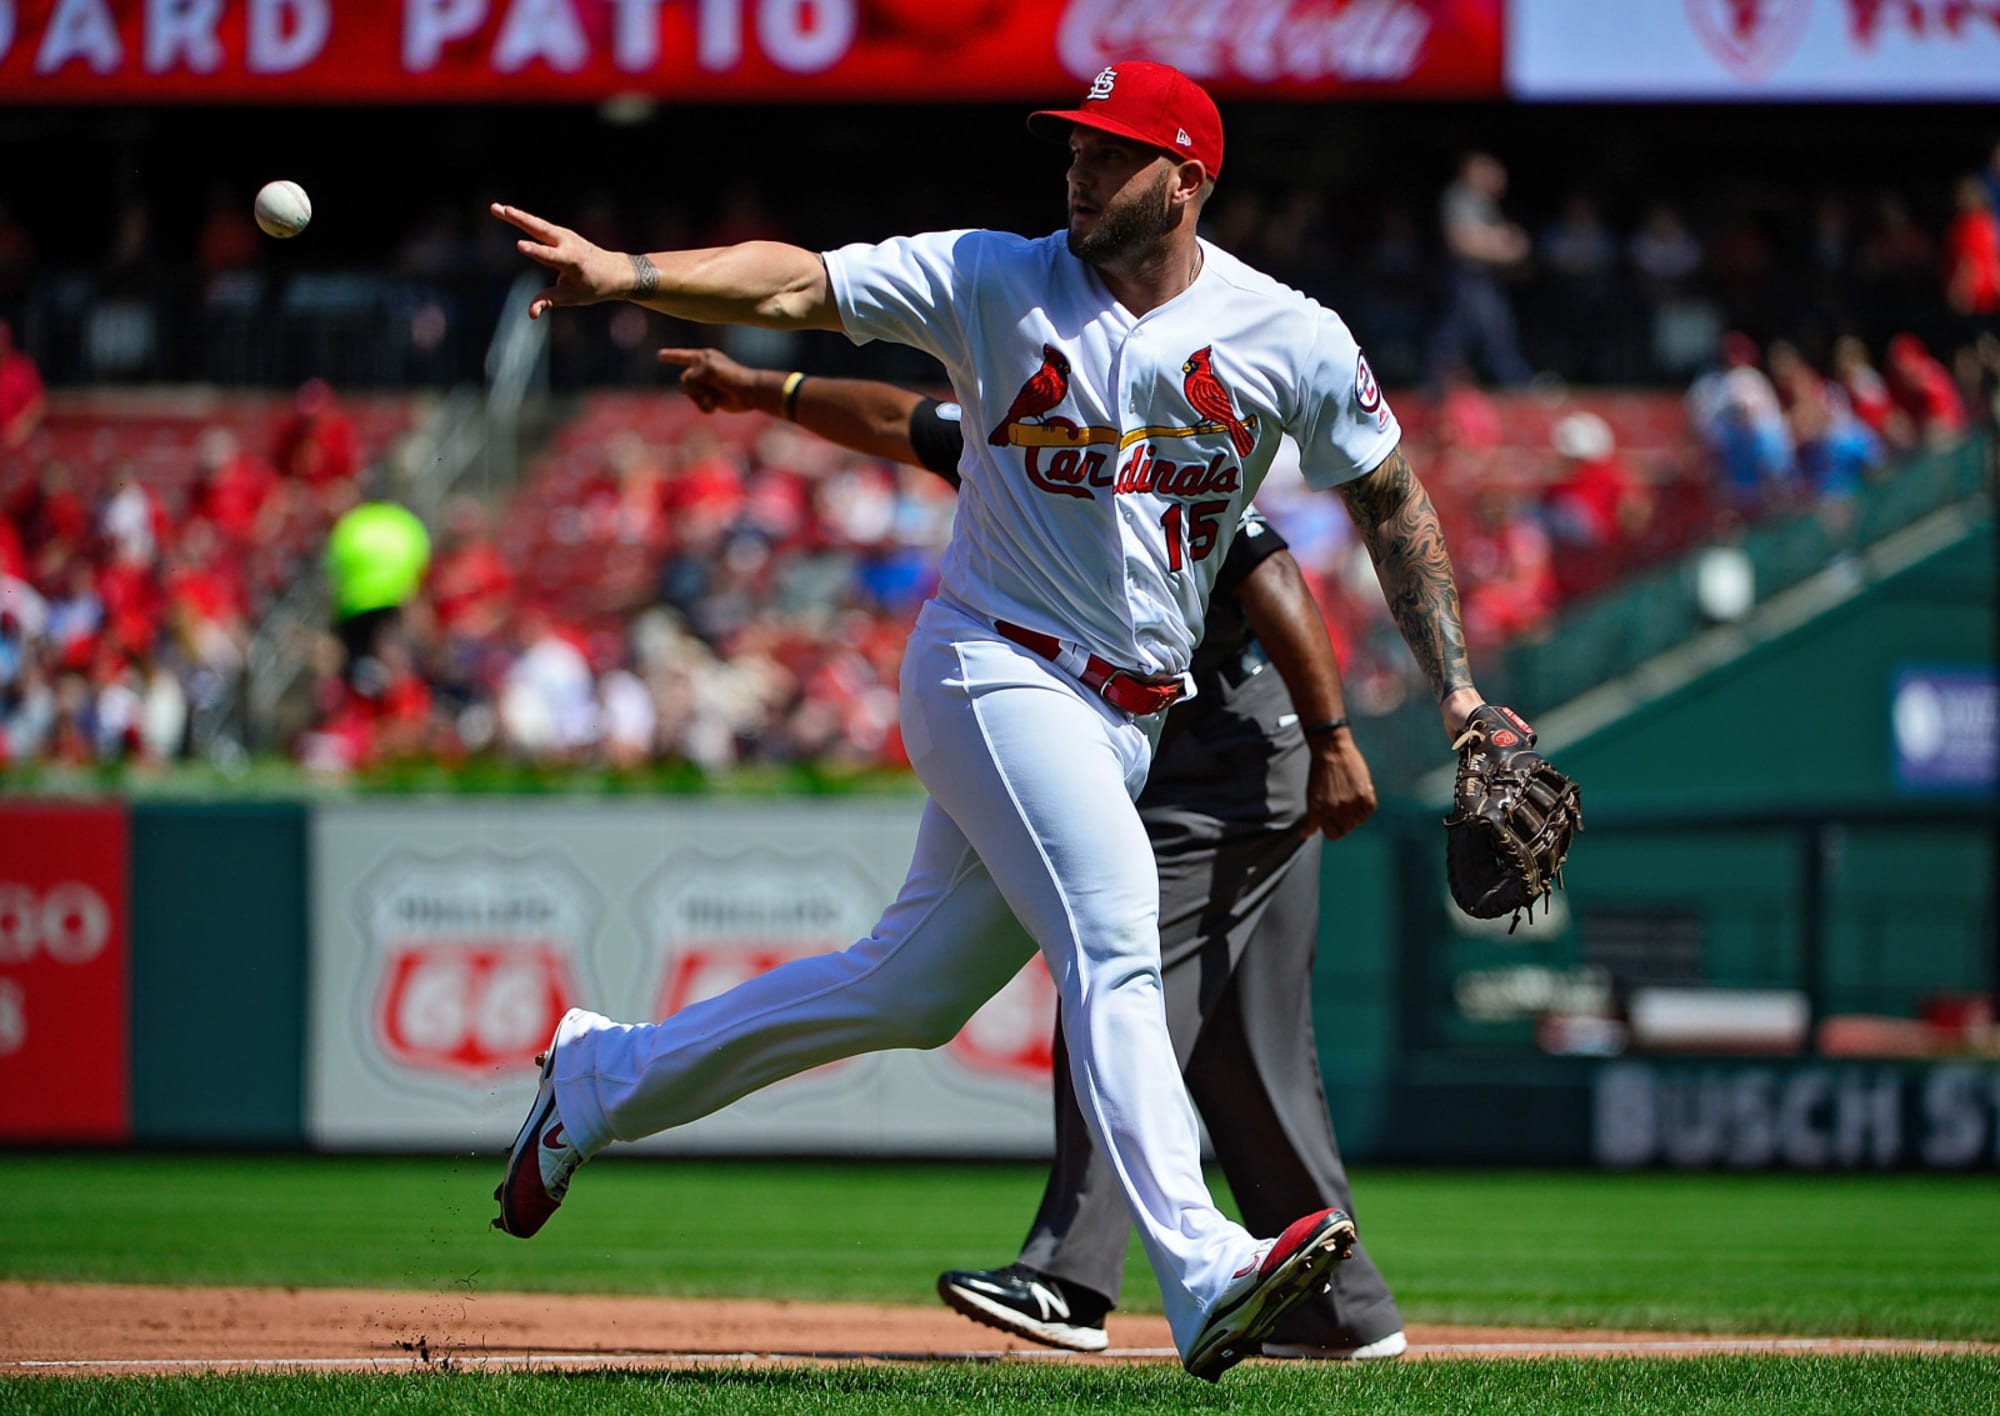 St. Louis Cardinals: Please do not bring Matt Adams back in 2019